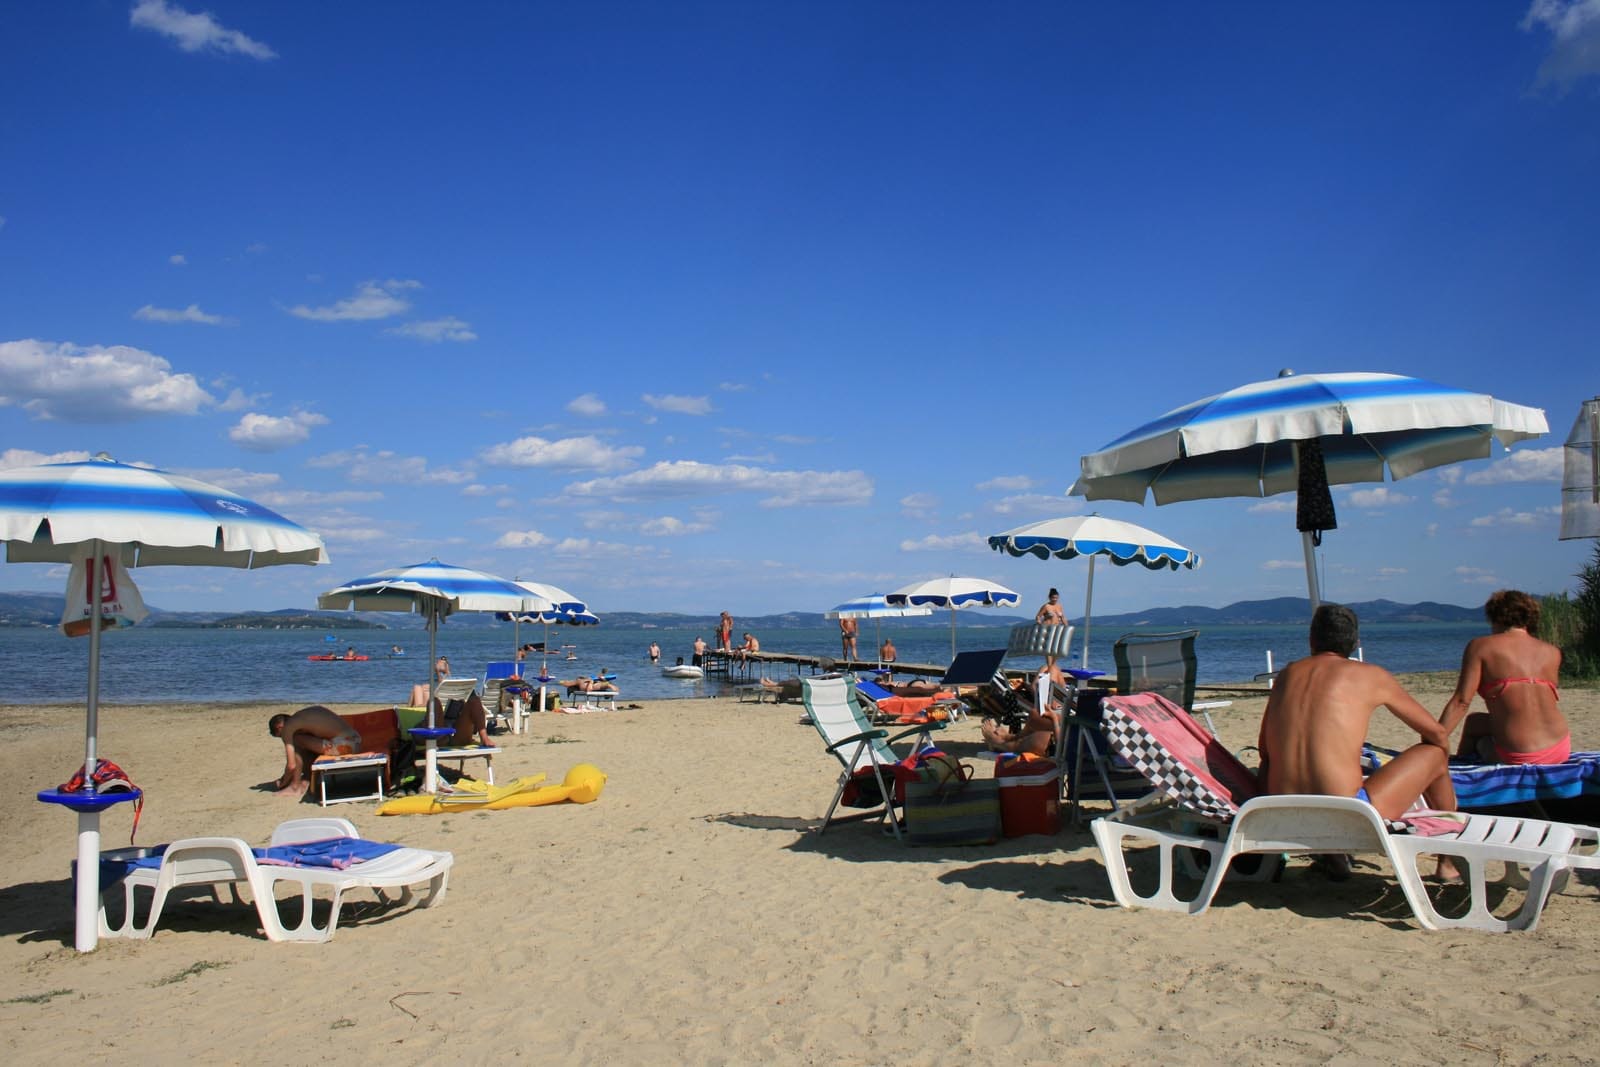 Spiaggia Badiaccia'in fotoğrafı yeşil su yüzey ile